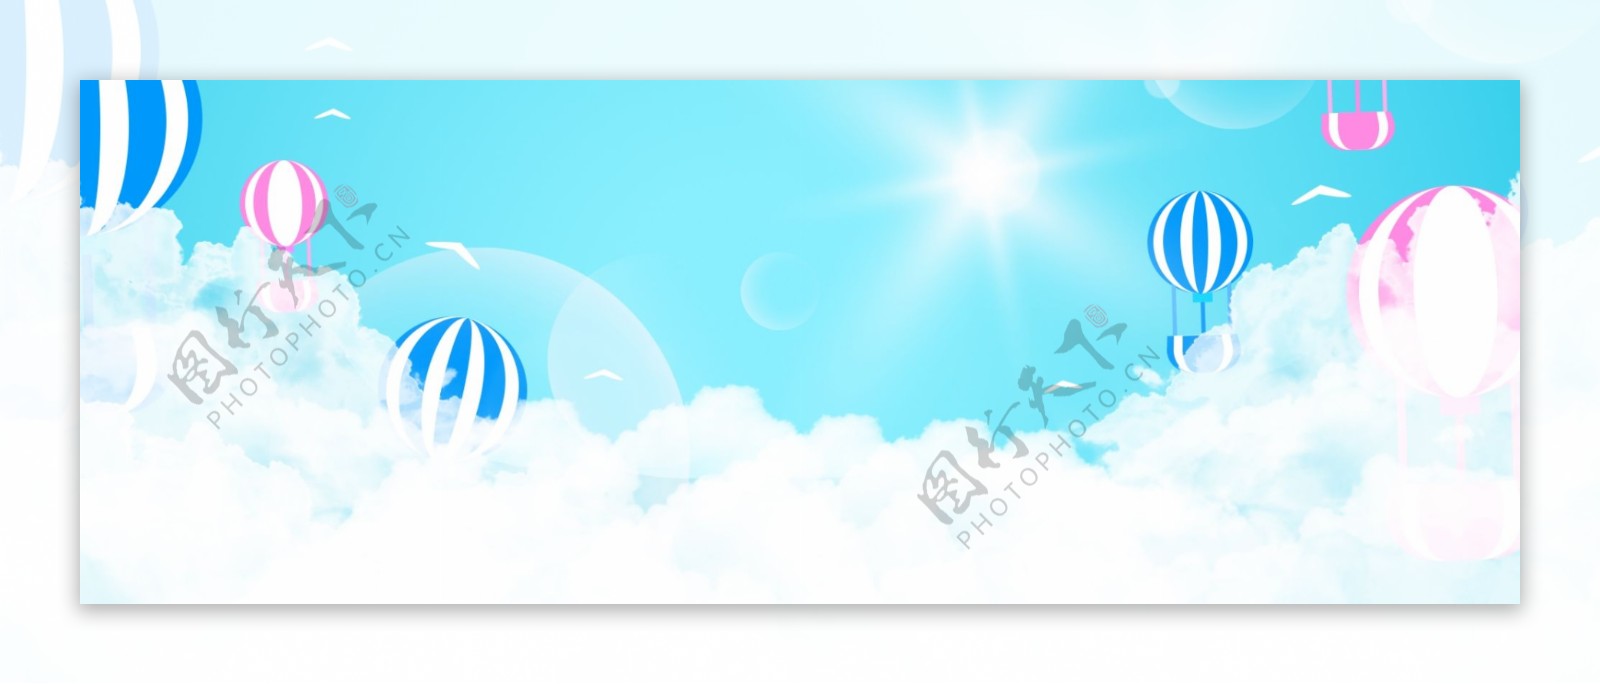 夏天天空热气球banner背景